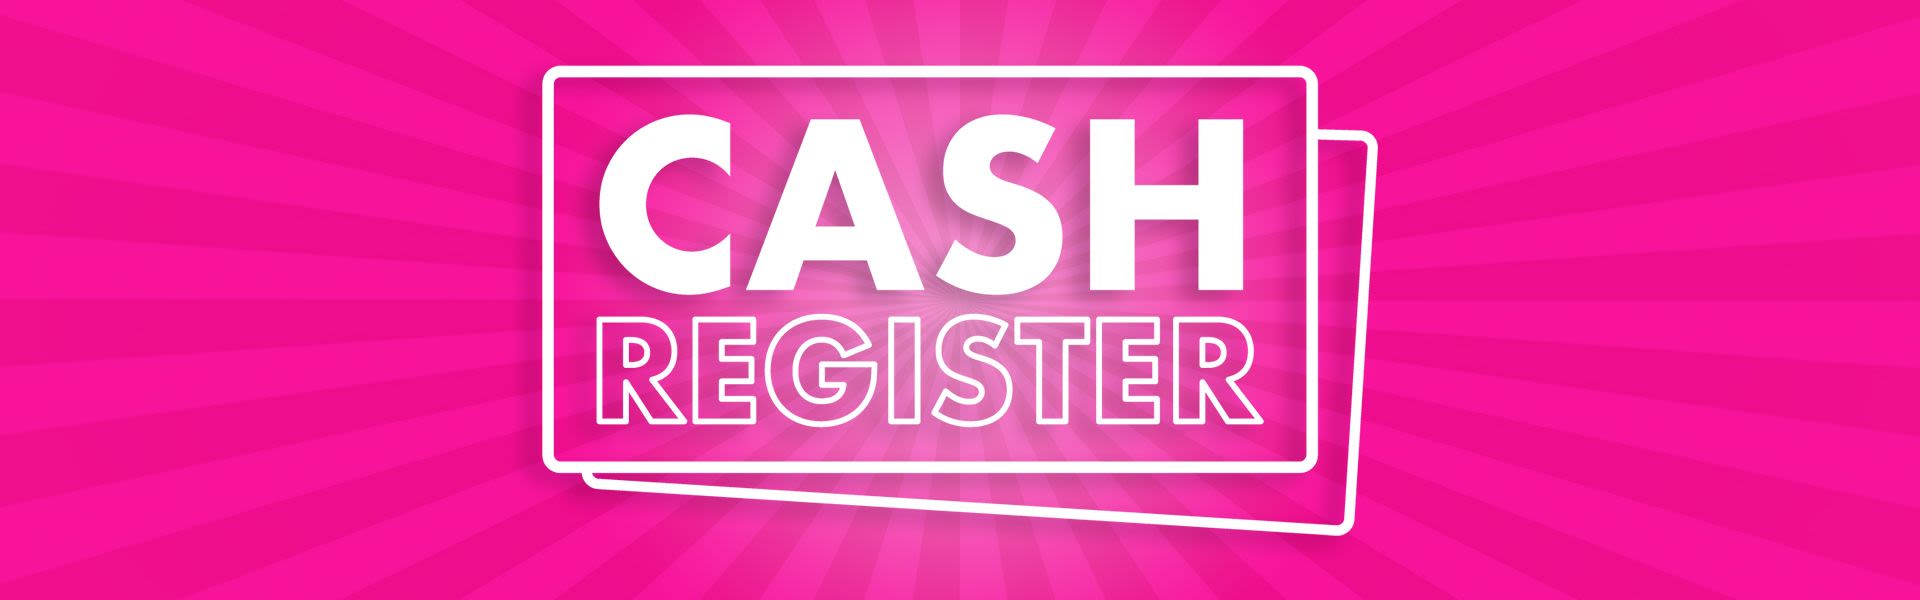 online cash register free